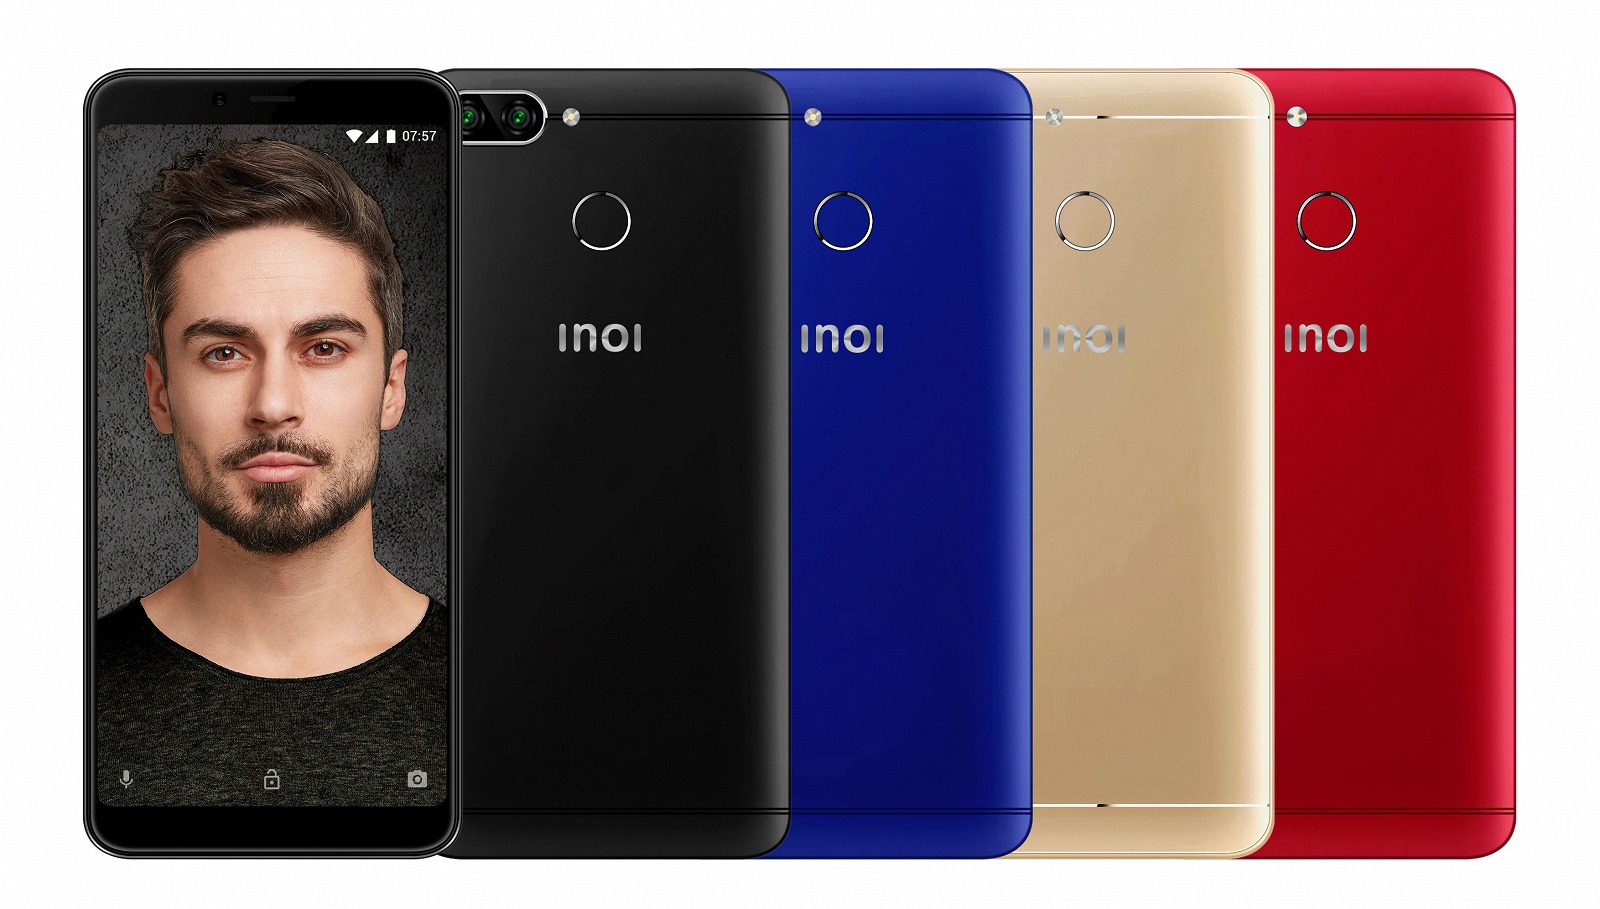 100-долларовый российский смартфон Inoi 5 Pro получил сдвоенную камеру, 2 ГБ ОЗУ и аккумулятор емкостью 2850 мА•ч